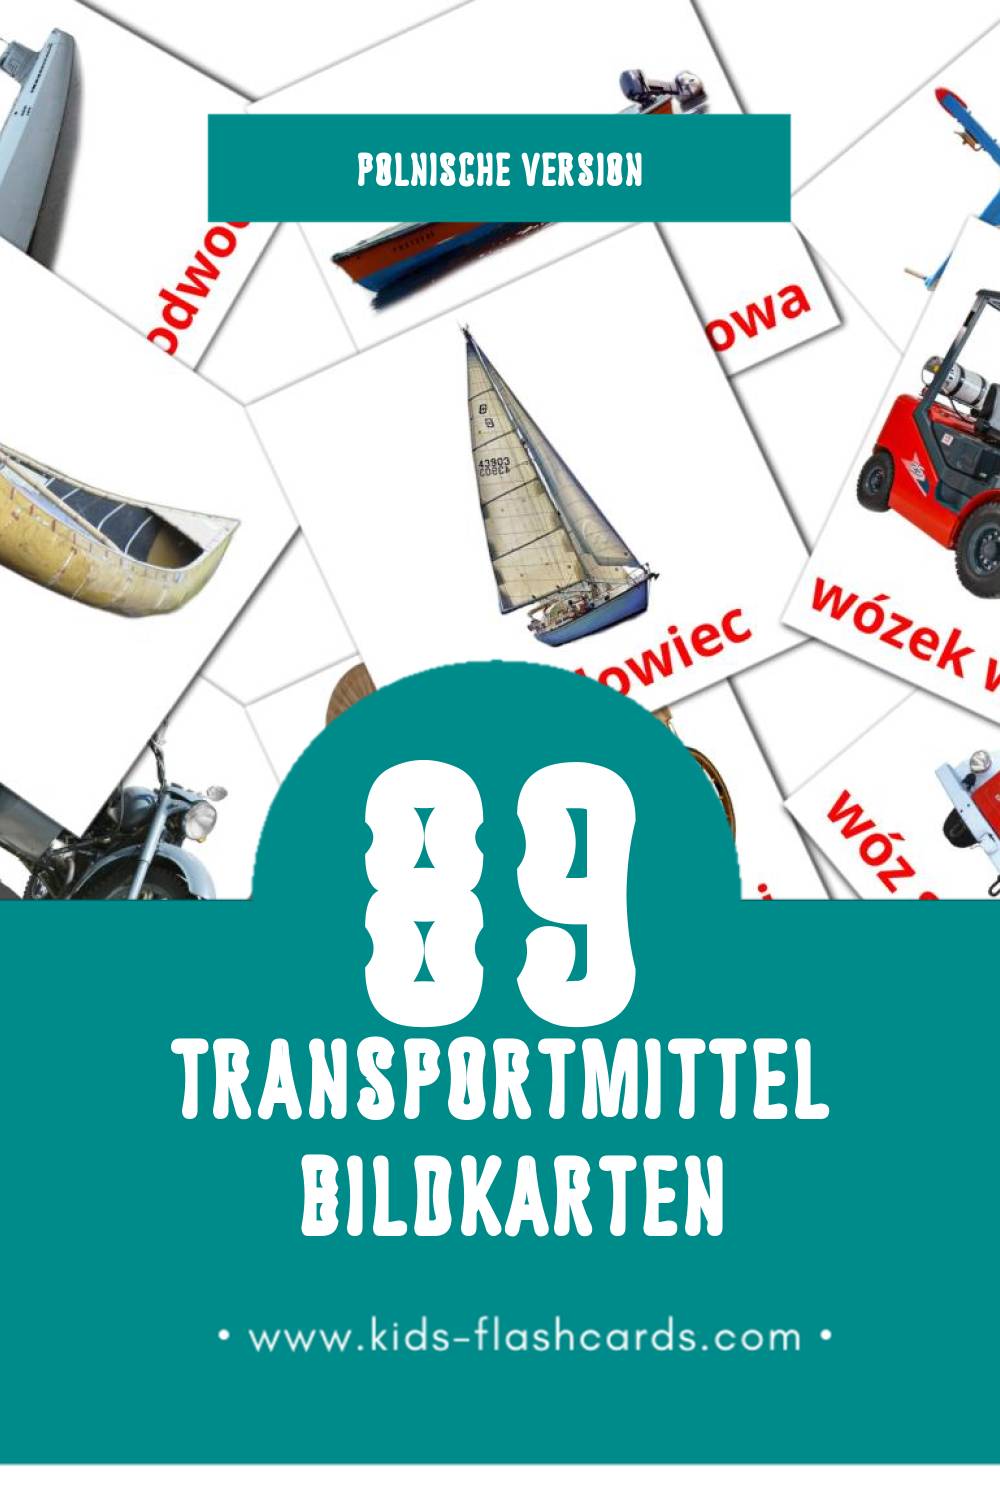 Visual Transport Flashcards für Kleinkinder (89 Karten in Polnisch)